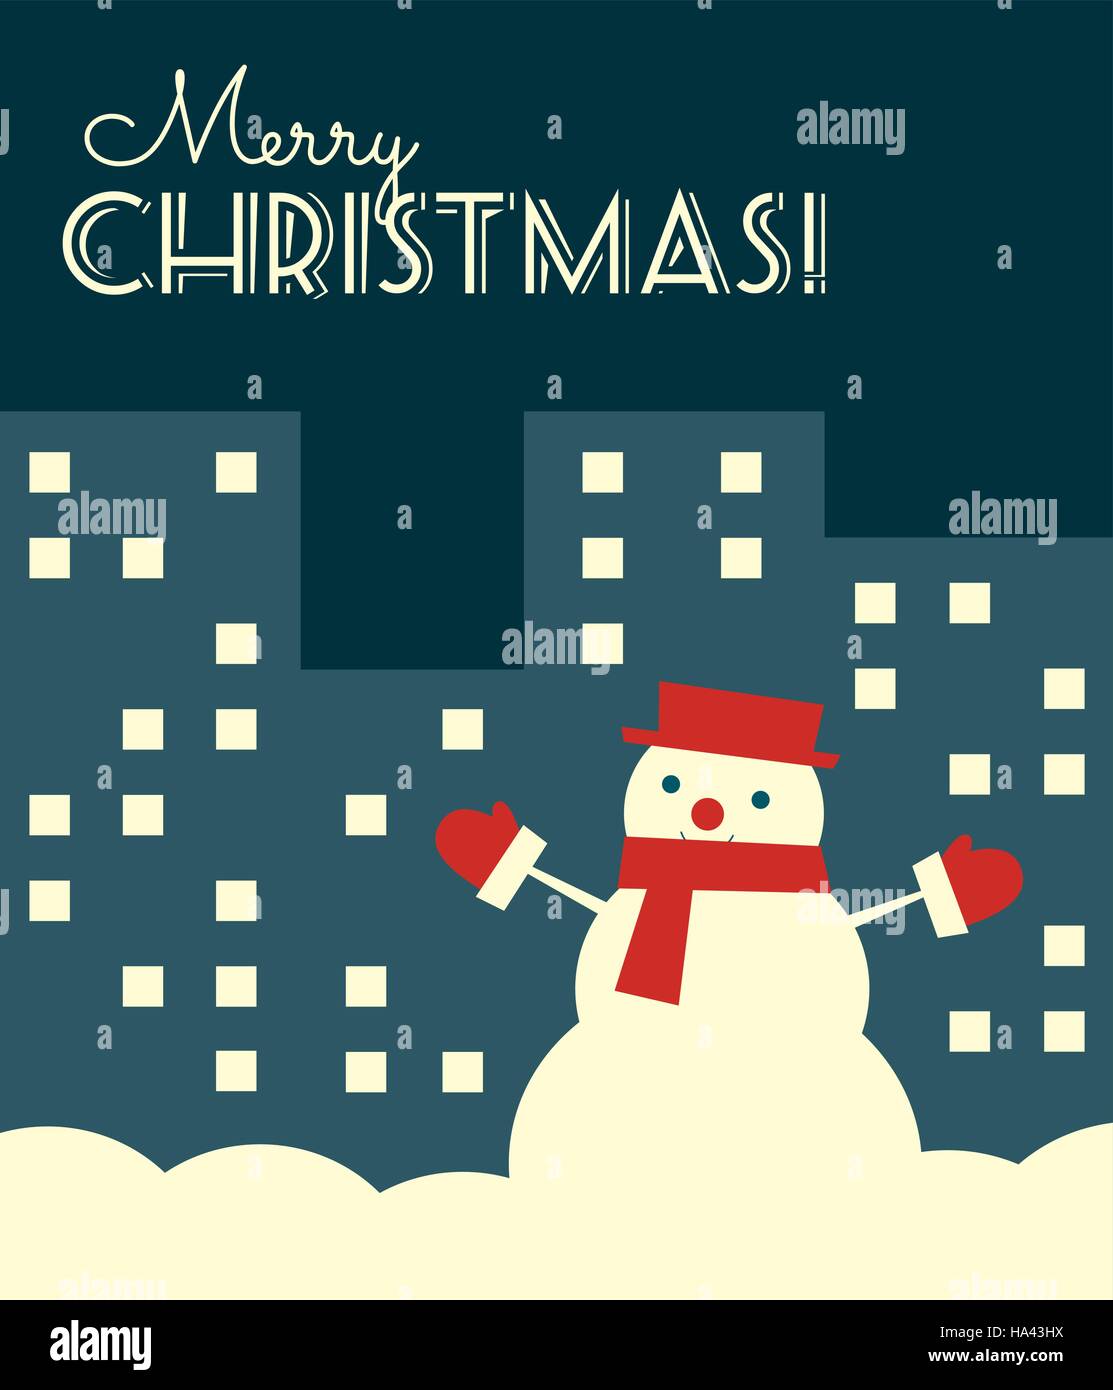 Illustrazione Vettoriale. In stile retrò scheda di Natale con un pupazzo di neve in una città di notte. Formato verticale. Illustrazione Vettoriale